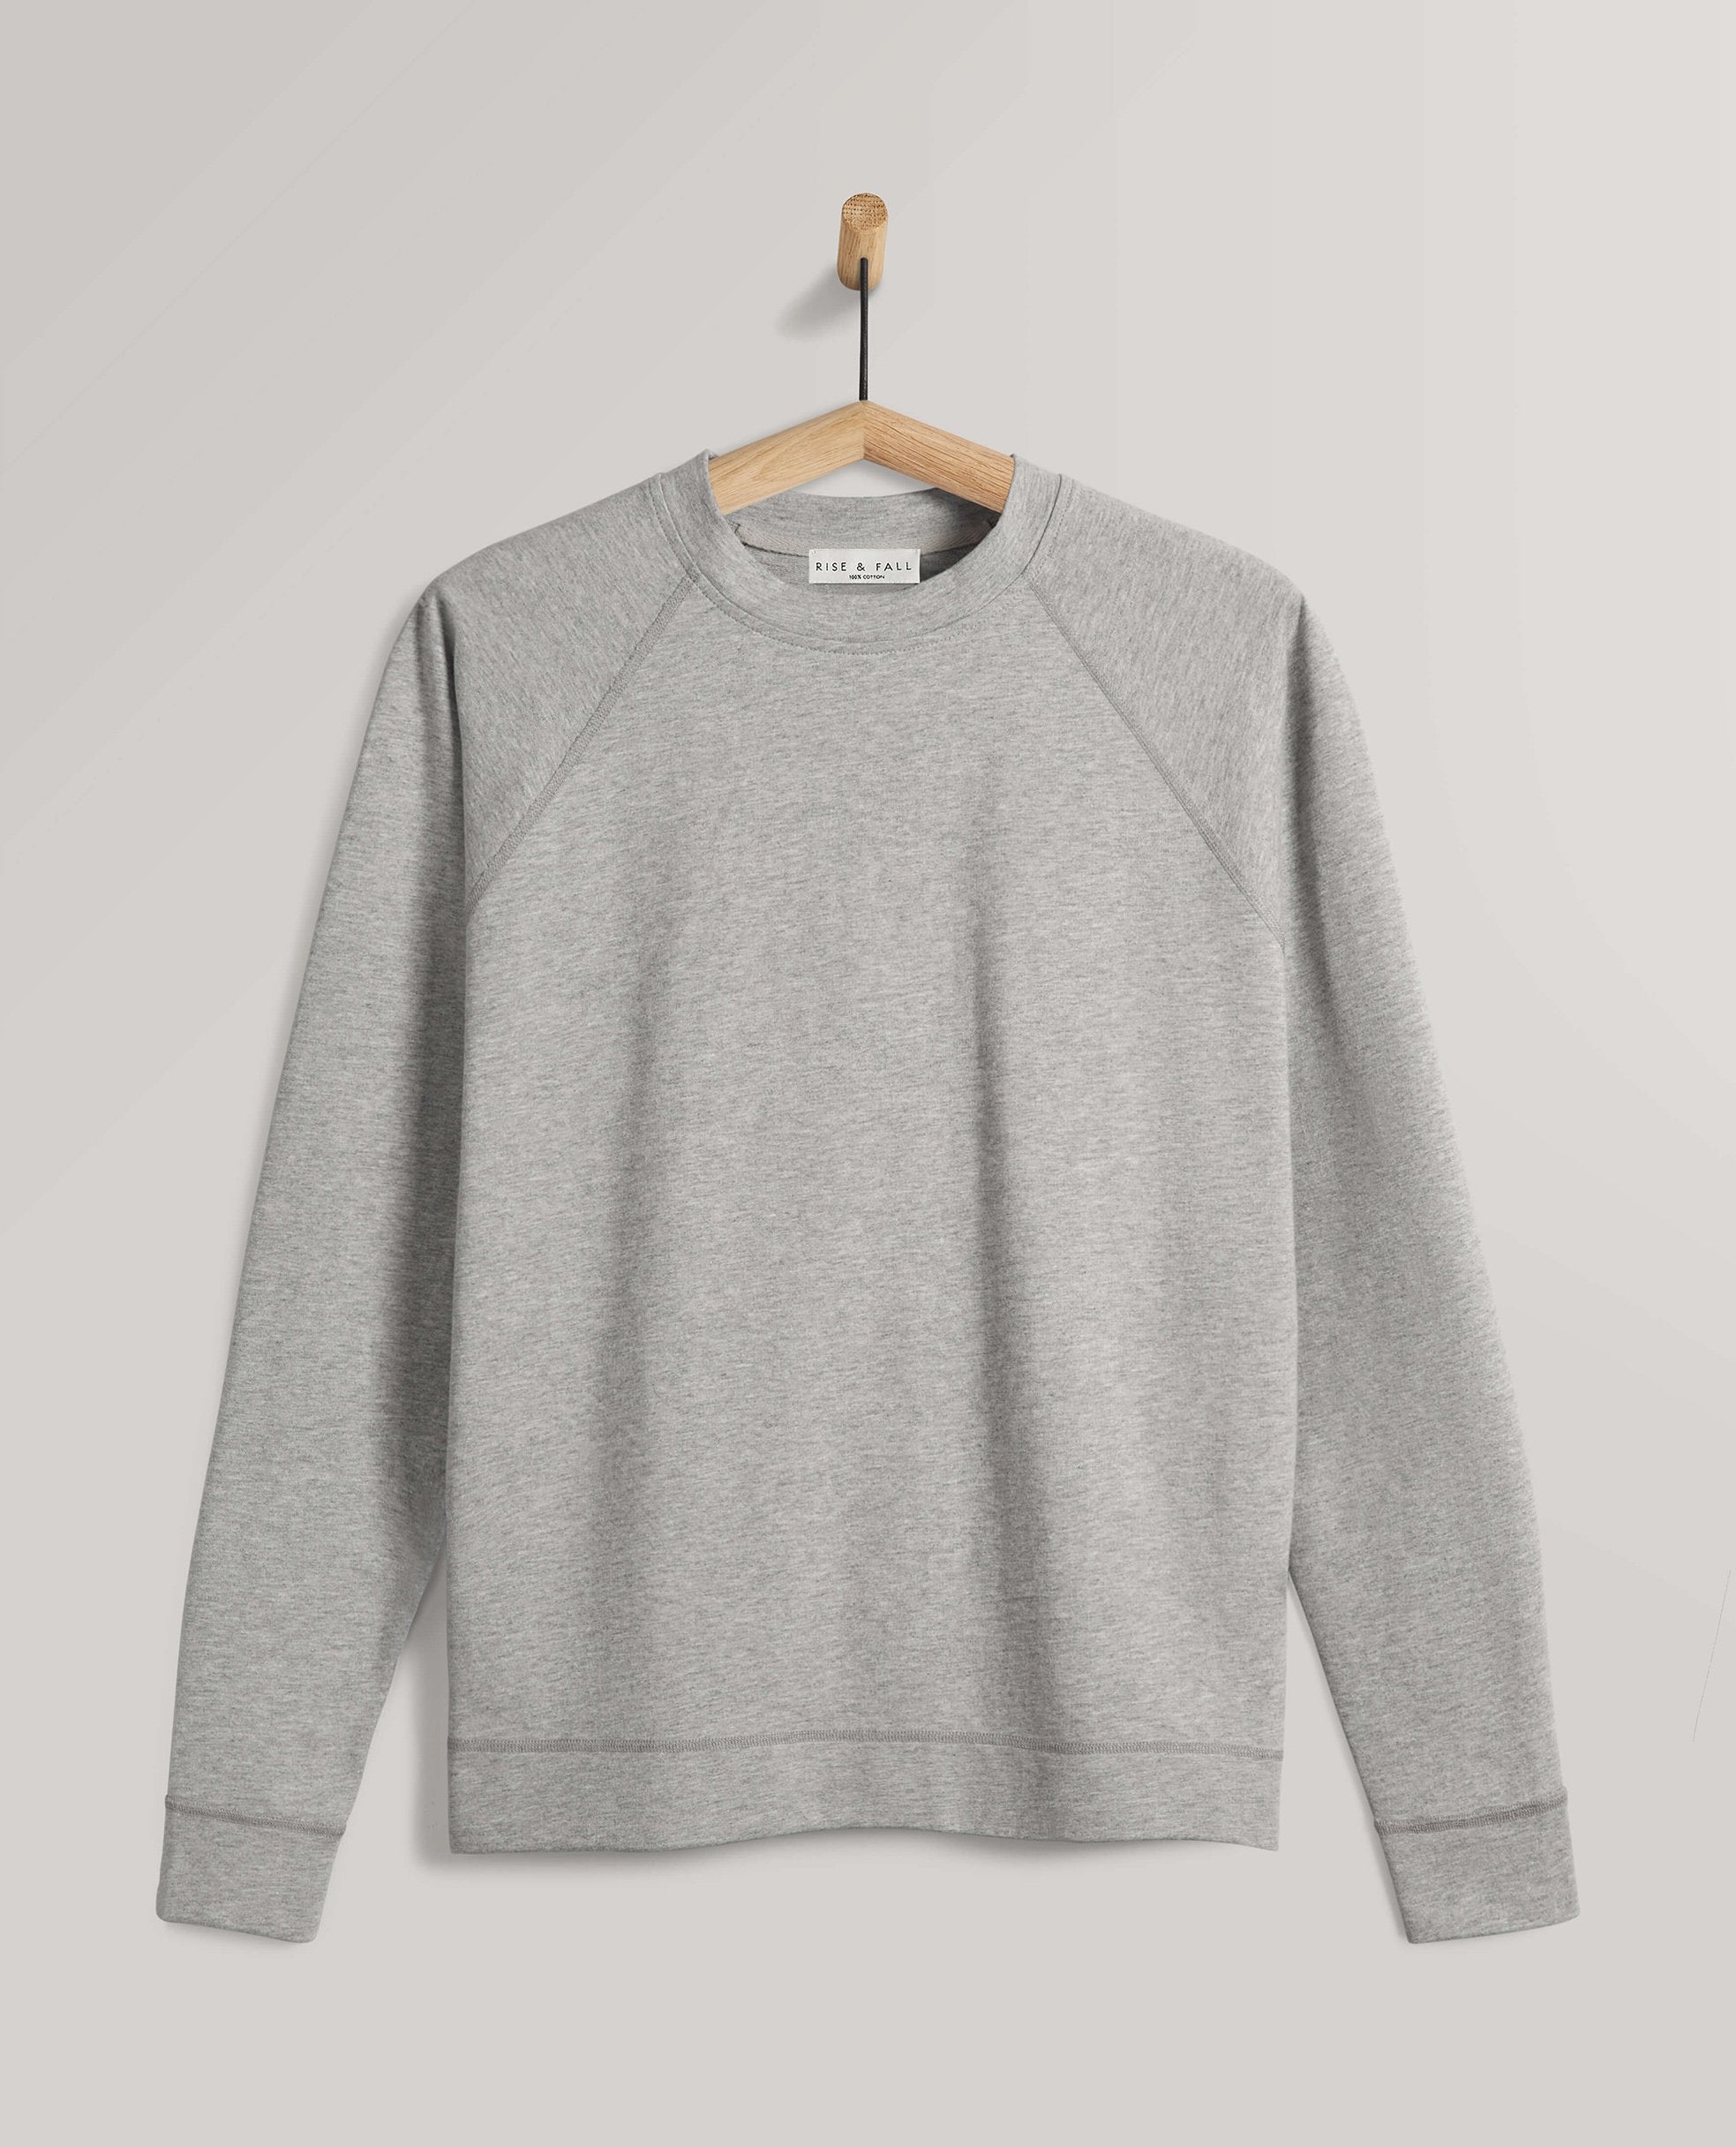 grijs sweatshirt kopen combinaties